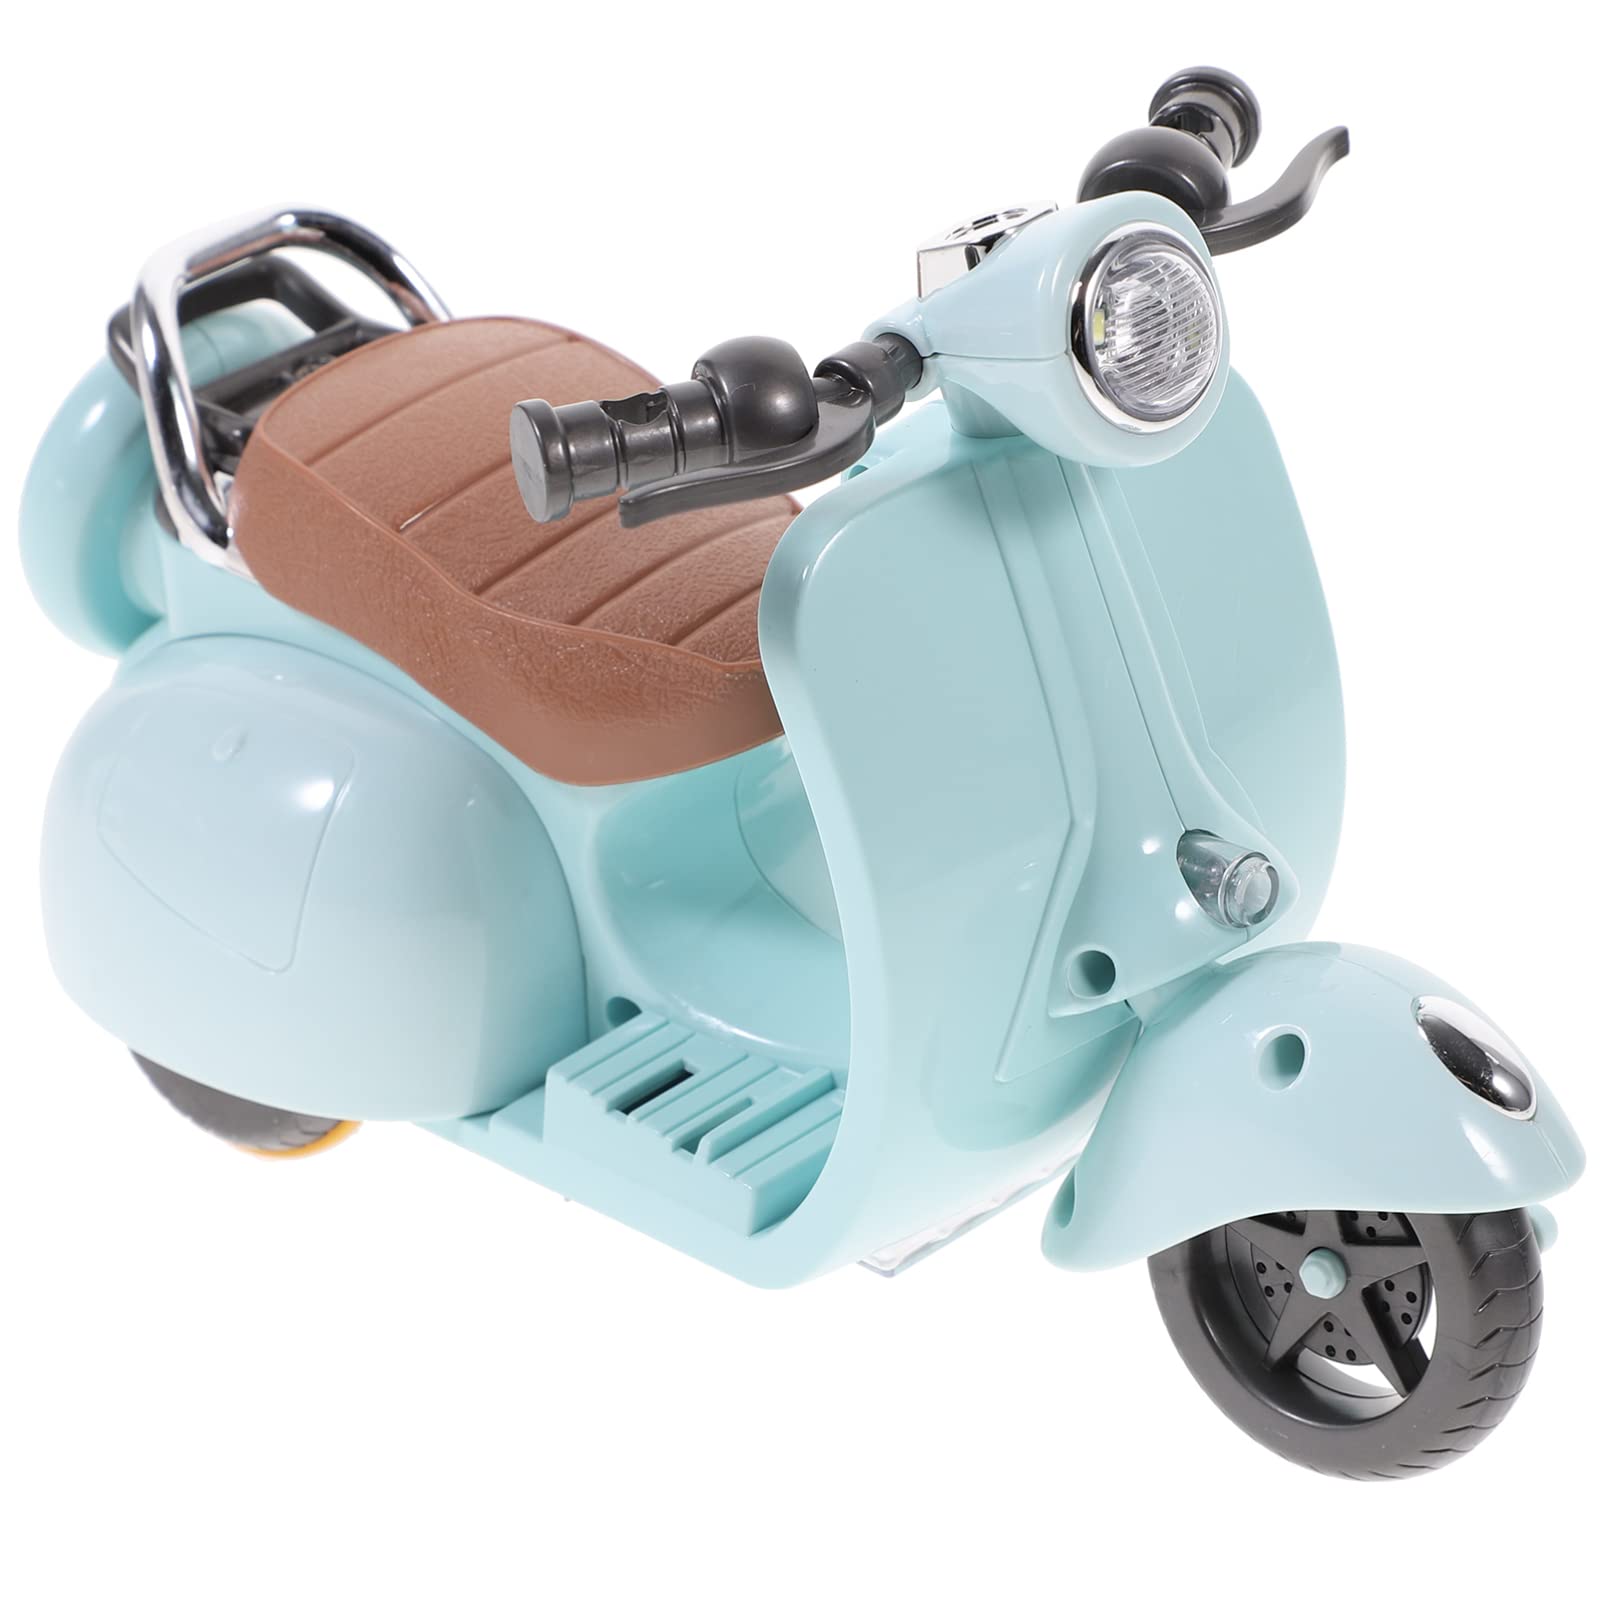 ハムスター おもちゃ 車 電動バイク ライト 音楽 付き 360°回転 オートバイ おもちゃ 小さなペット用 ウサギ モルモット おもちゃ